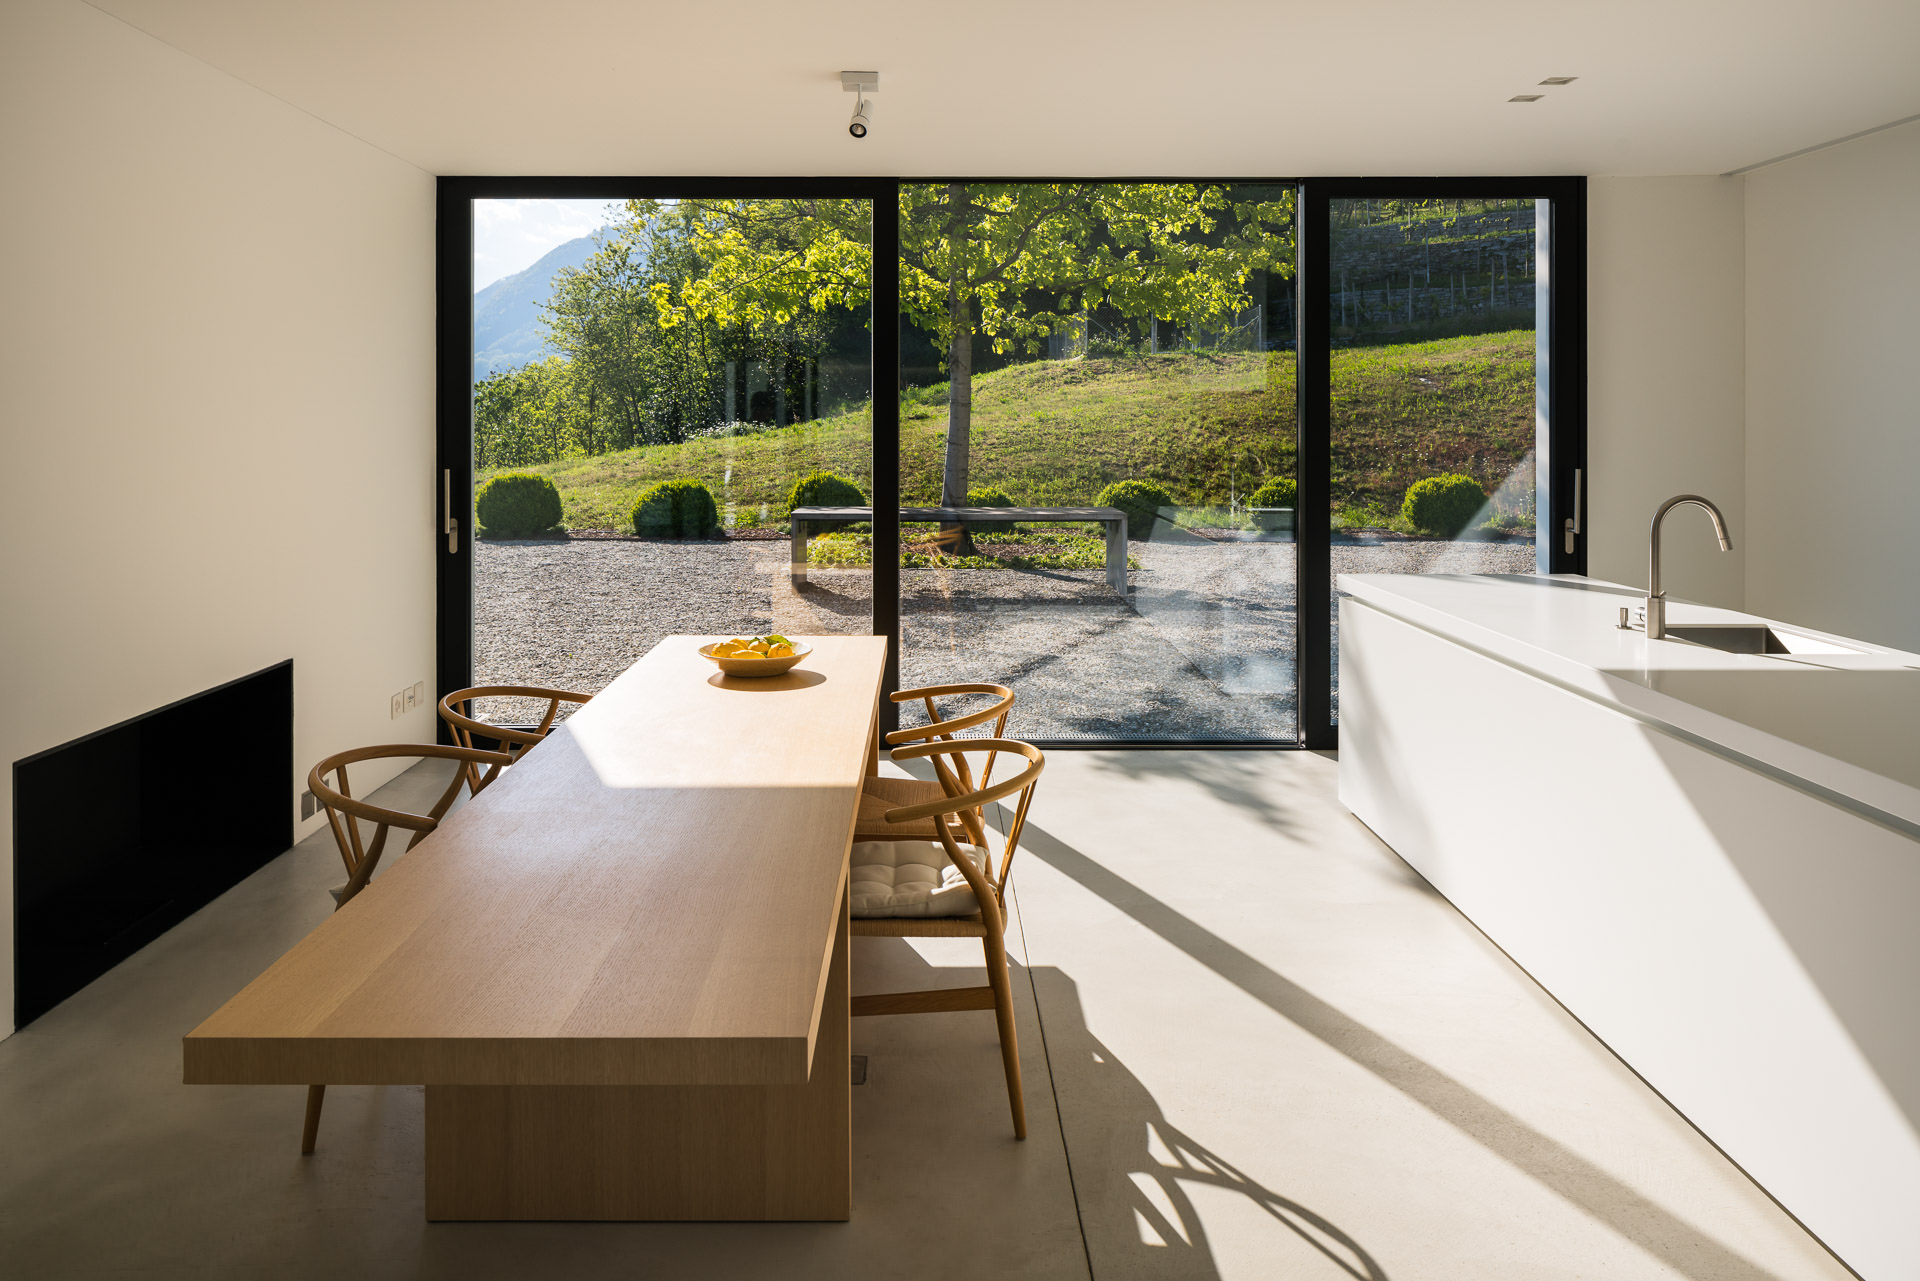 Kitchen Design & Furniture - Interior Architectural Photography Switzerland - Philippe Wiget Photographer